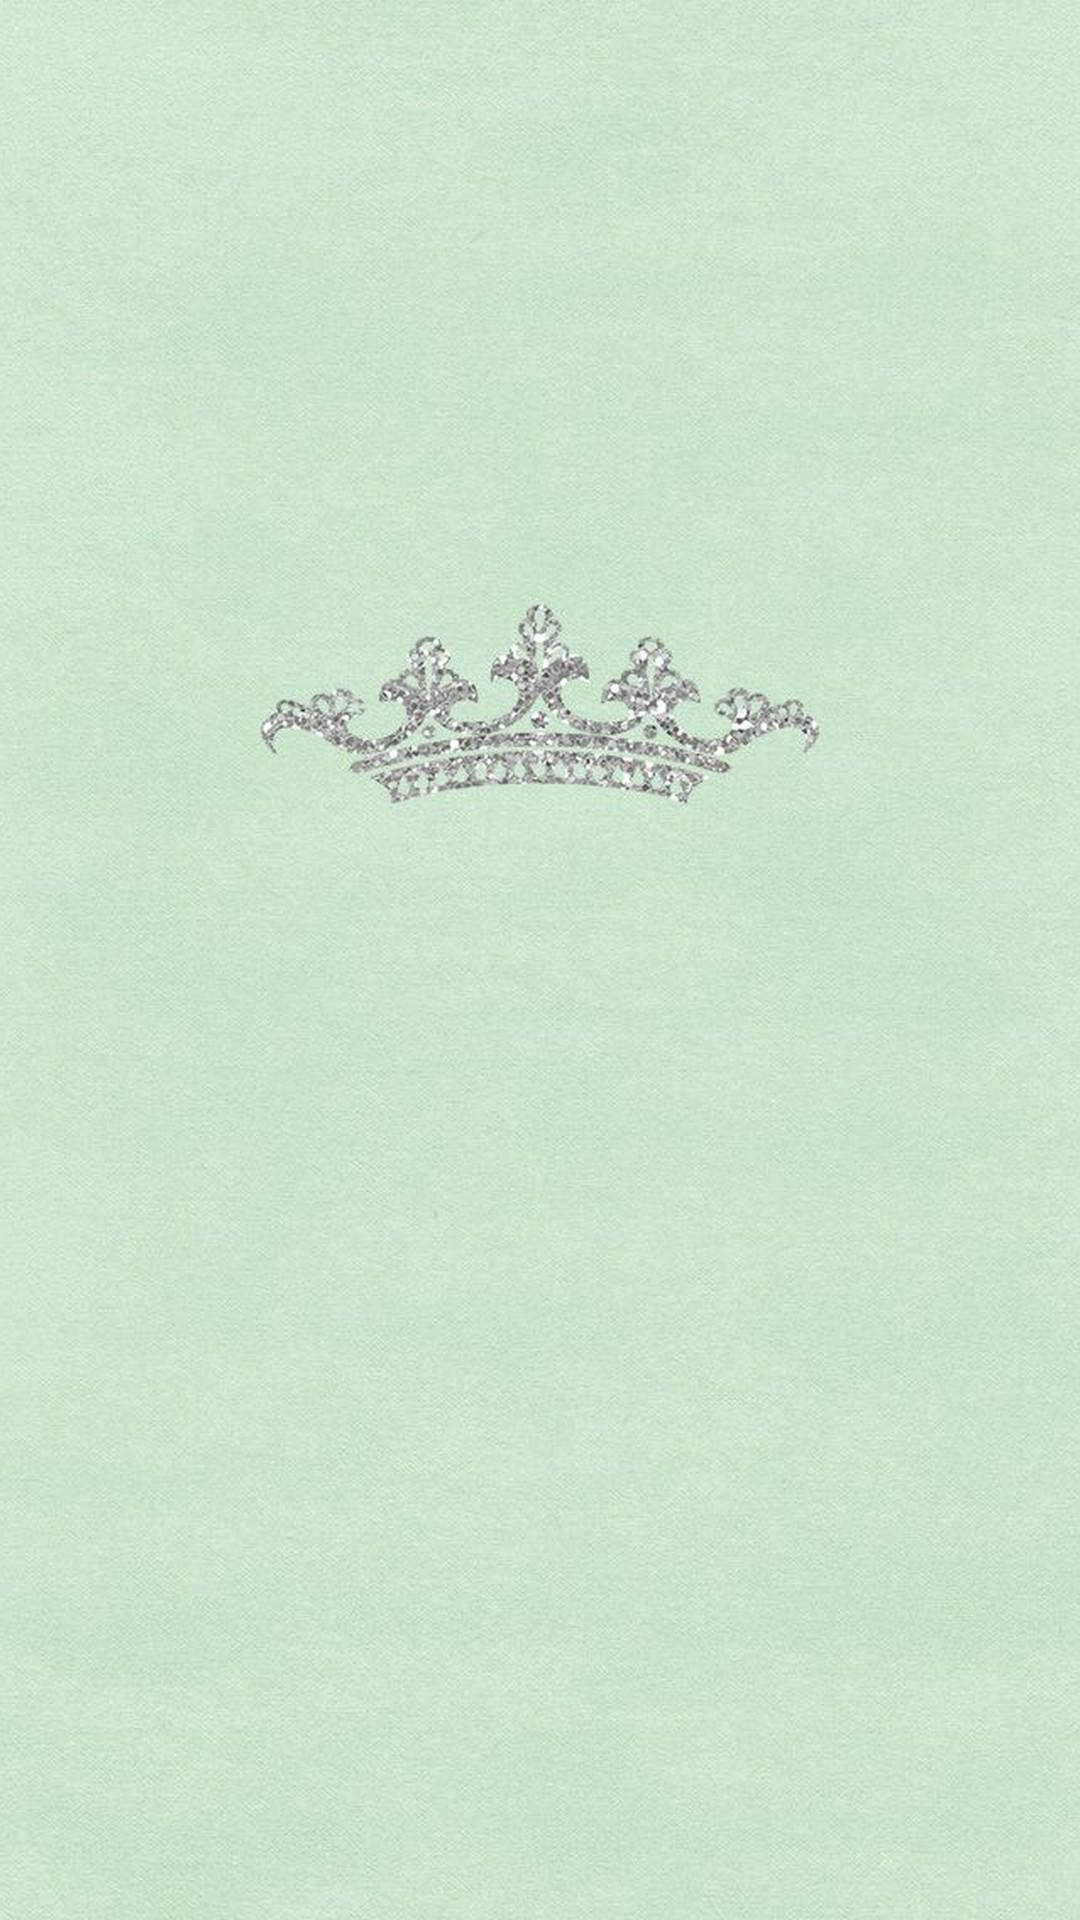 Elegant Royal Crown on Mint Green Backdrop Wallpaper